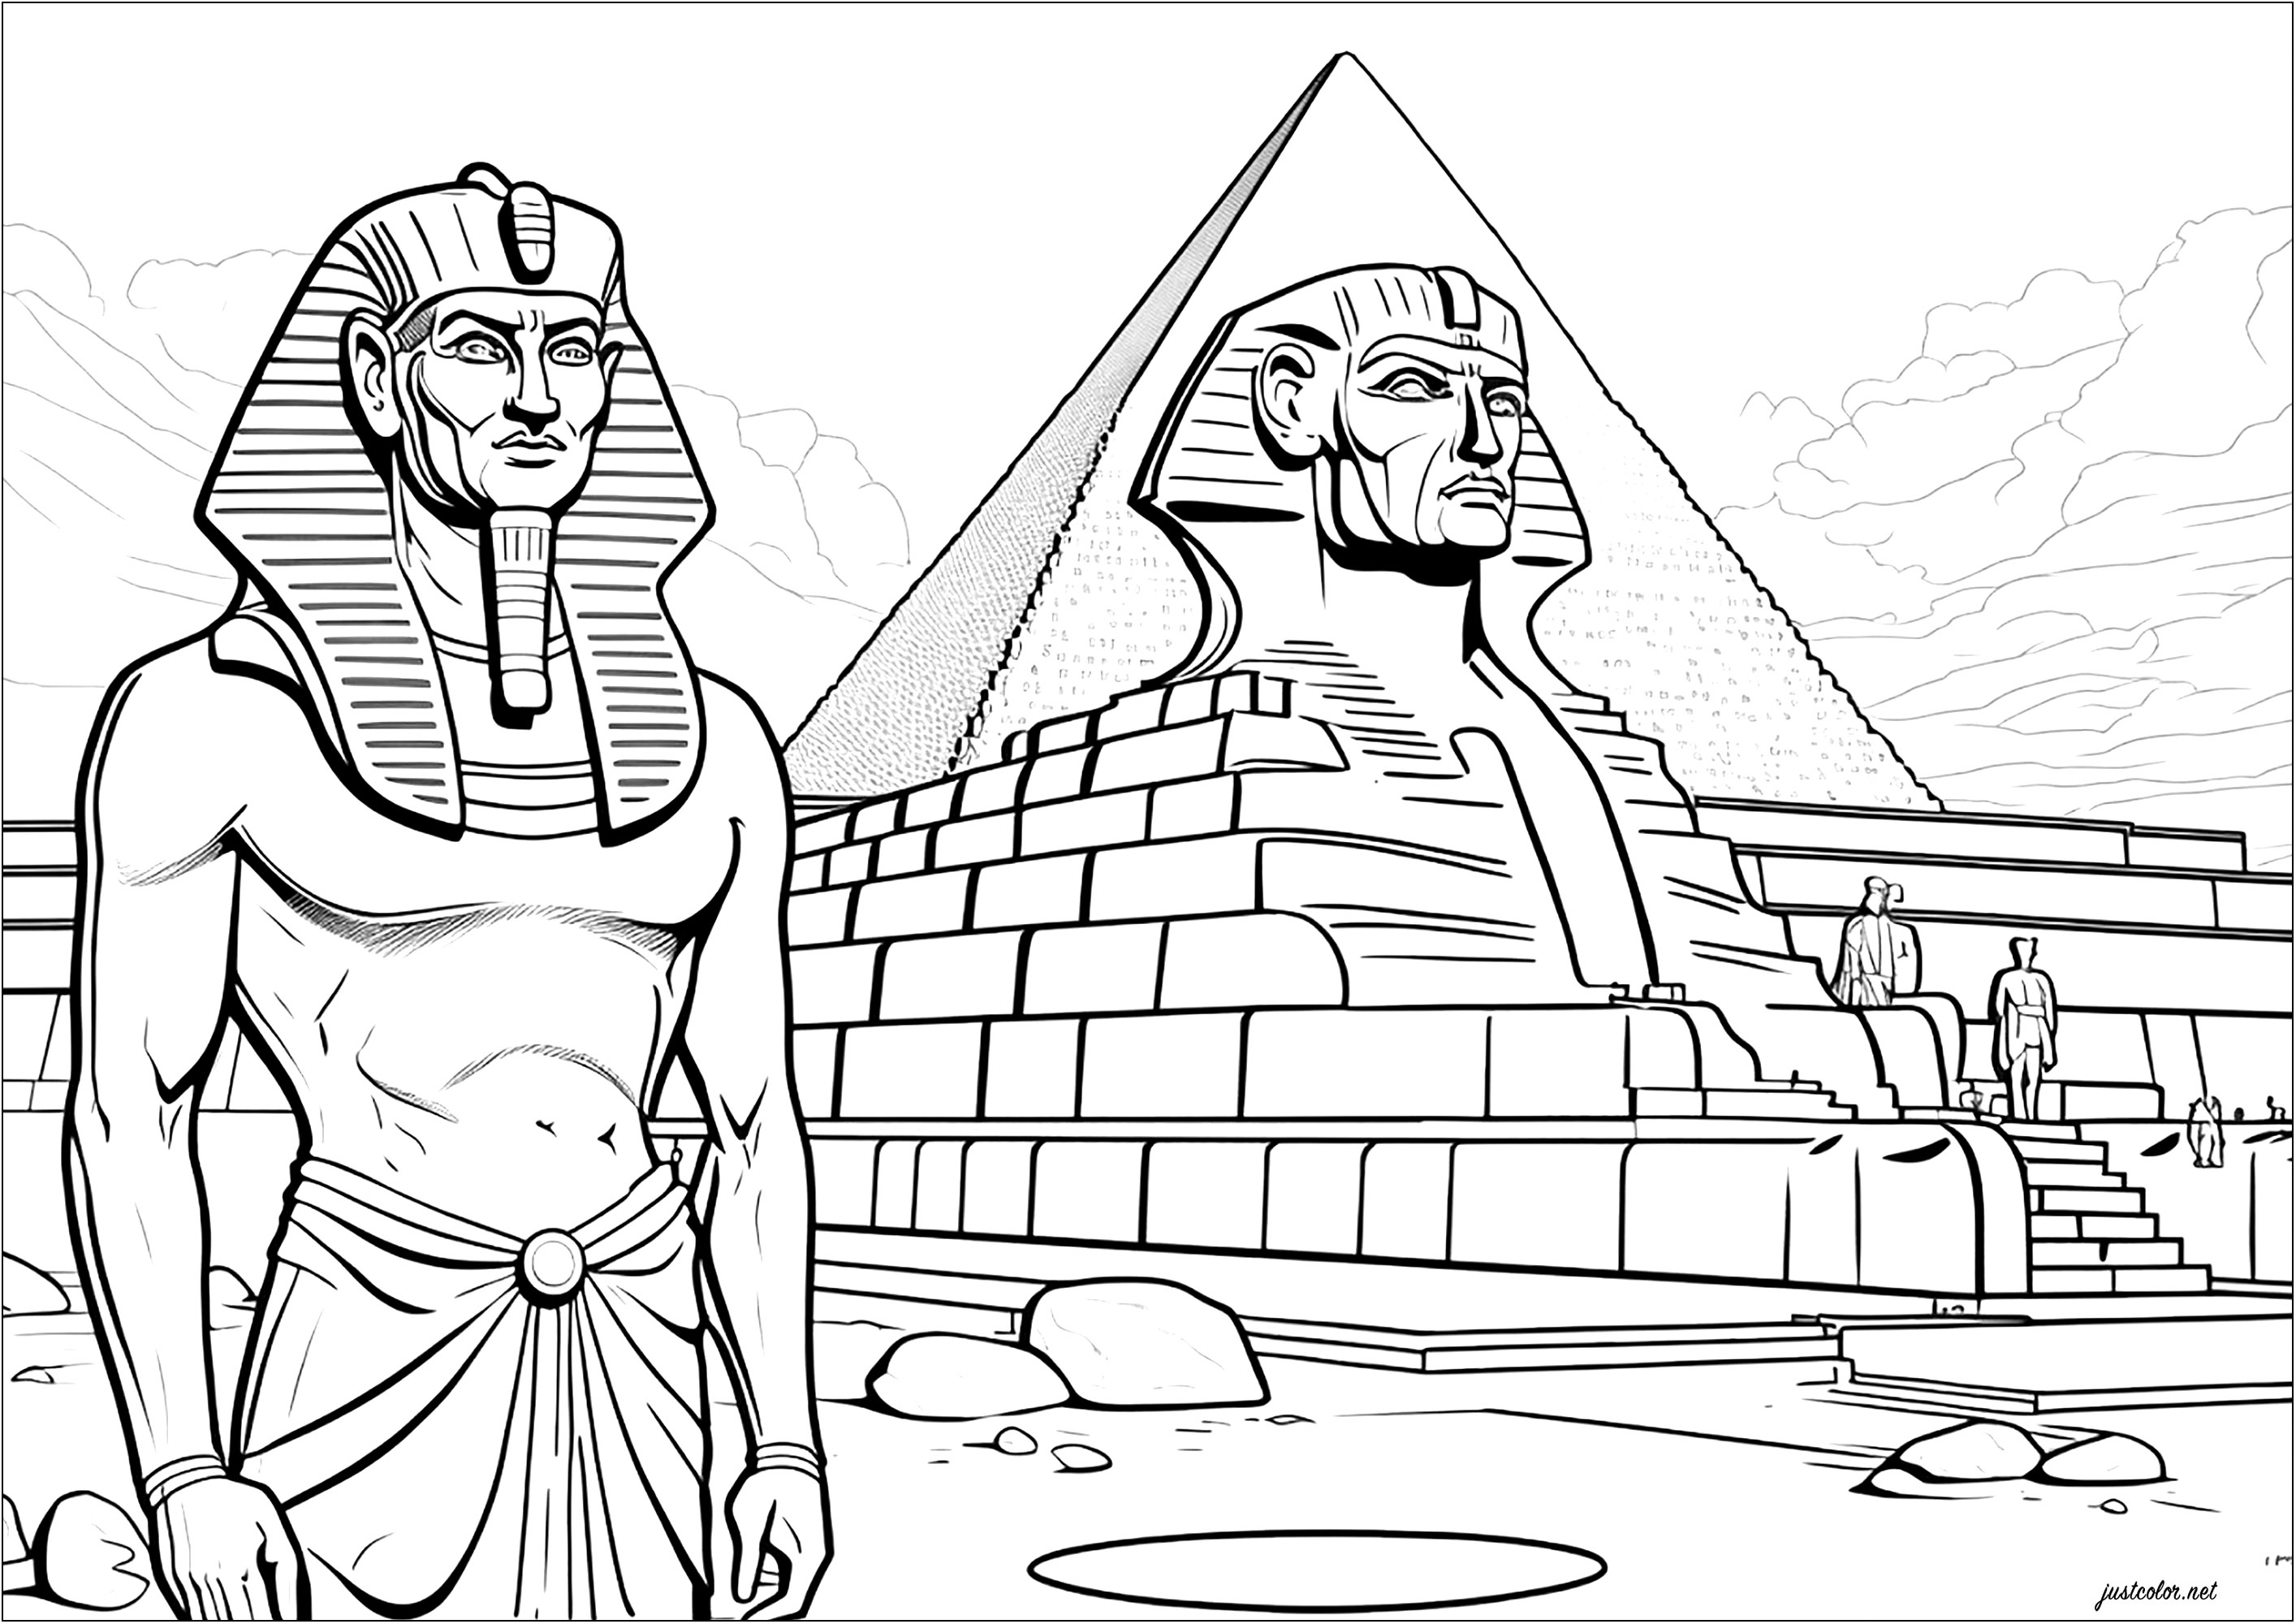 Pharaon devant sphynx à son effigie et pyramide. Ce coloriage représente un pharaon se tenant debout devant un sphynx le représentant et une grande pyramide. C'est une magnifique représentation de l'ancienne Egypte et de sa grandeur.